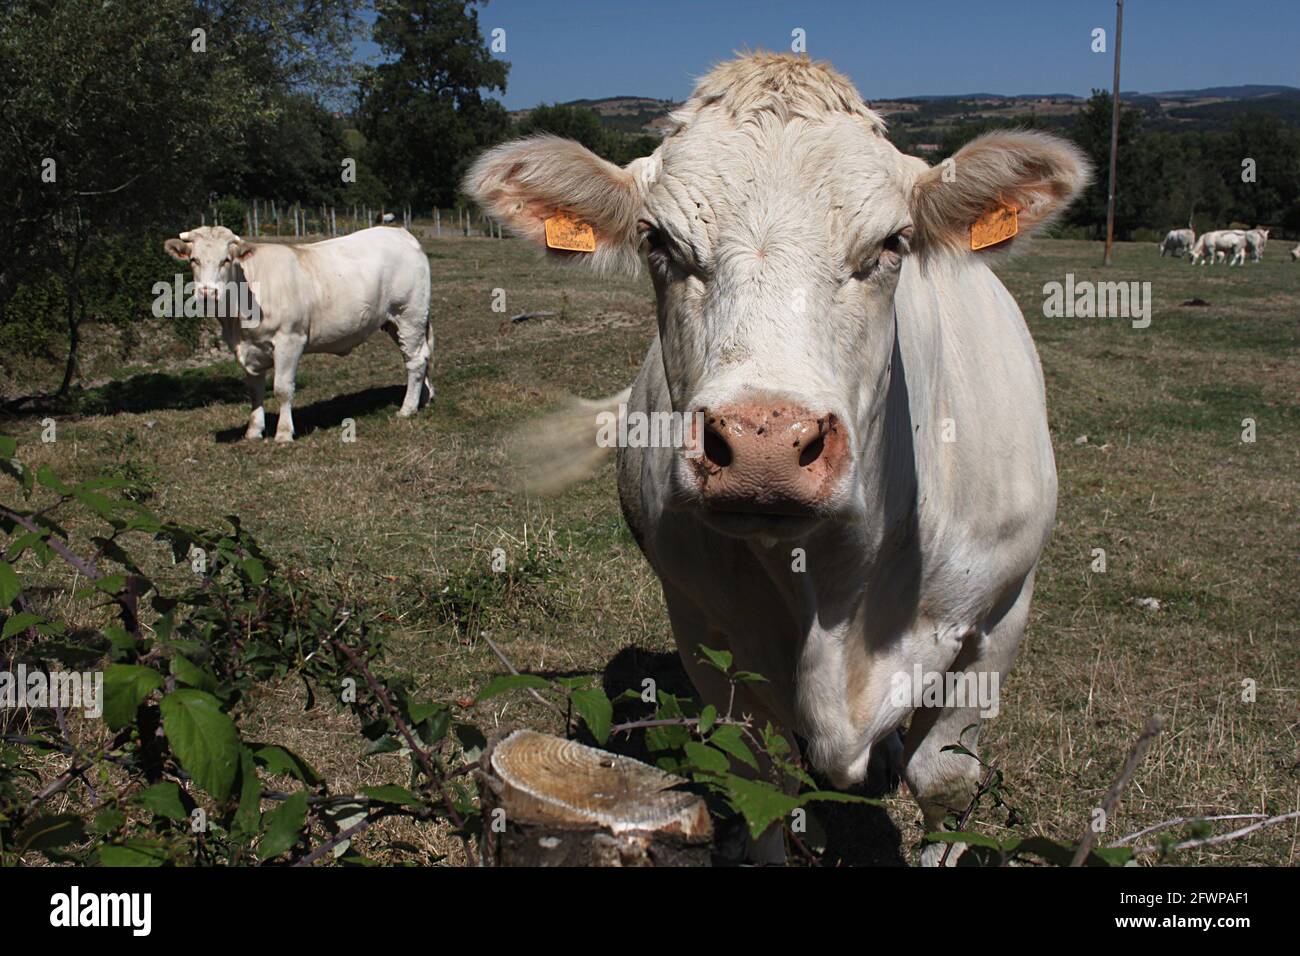 Bovini Charolais nella Francia centrale. La razza, allevata principalmente per la carne, è originaria di Charolles, nel dipartimento Saone-et-Loire della Francia centrale. Foto Stock